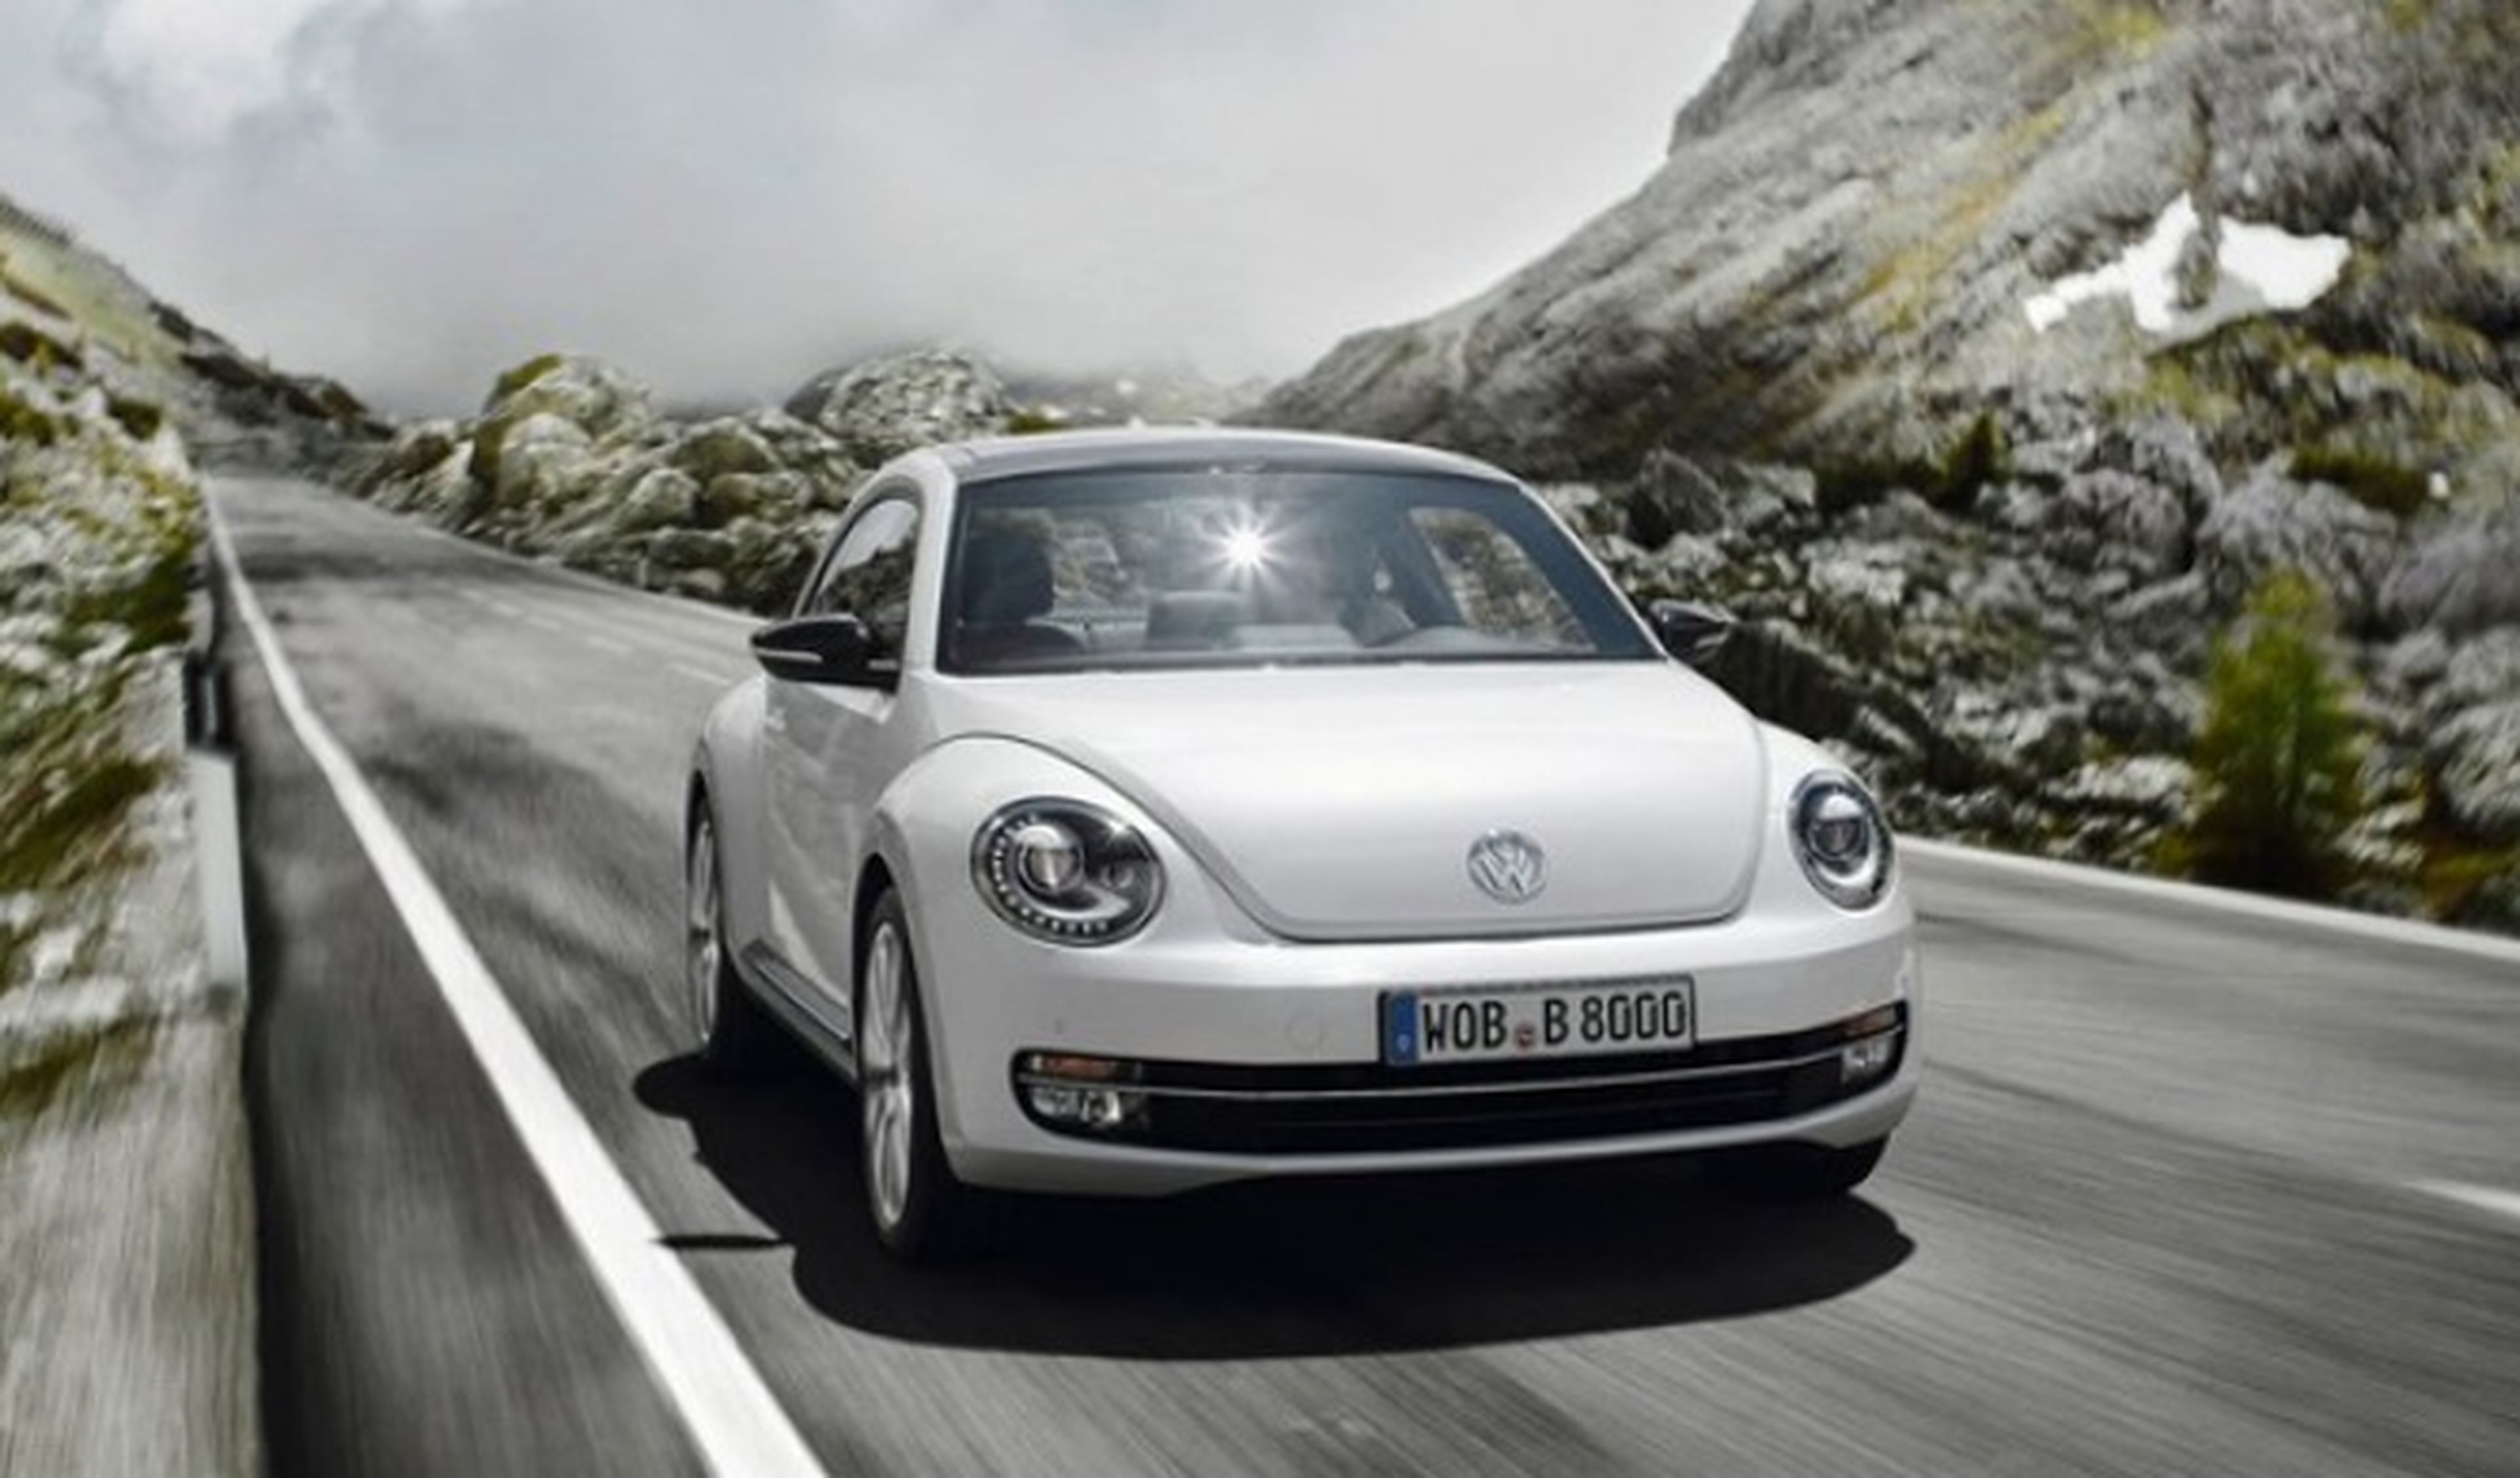 Volkswagen llama a revisión a 580.000 coches en China